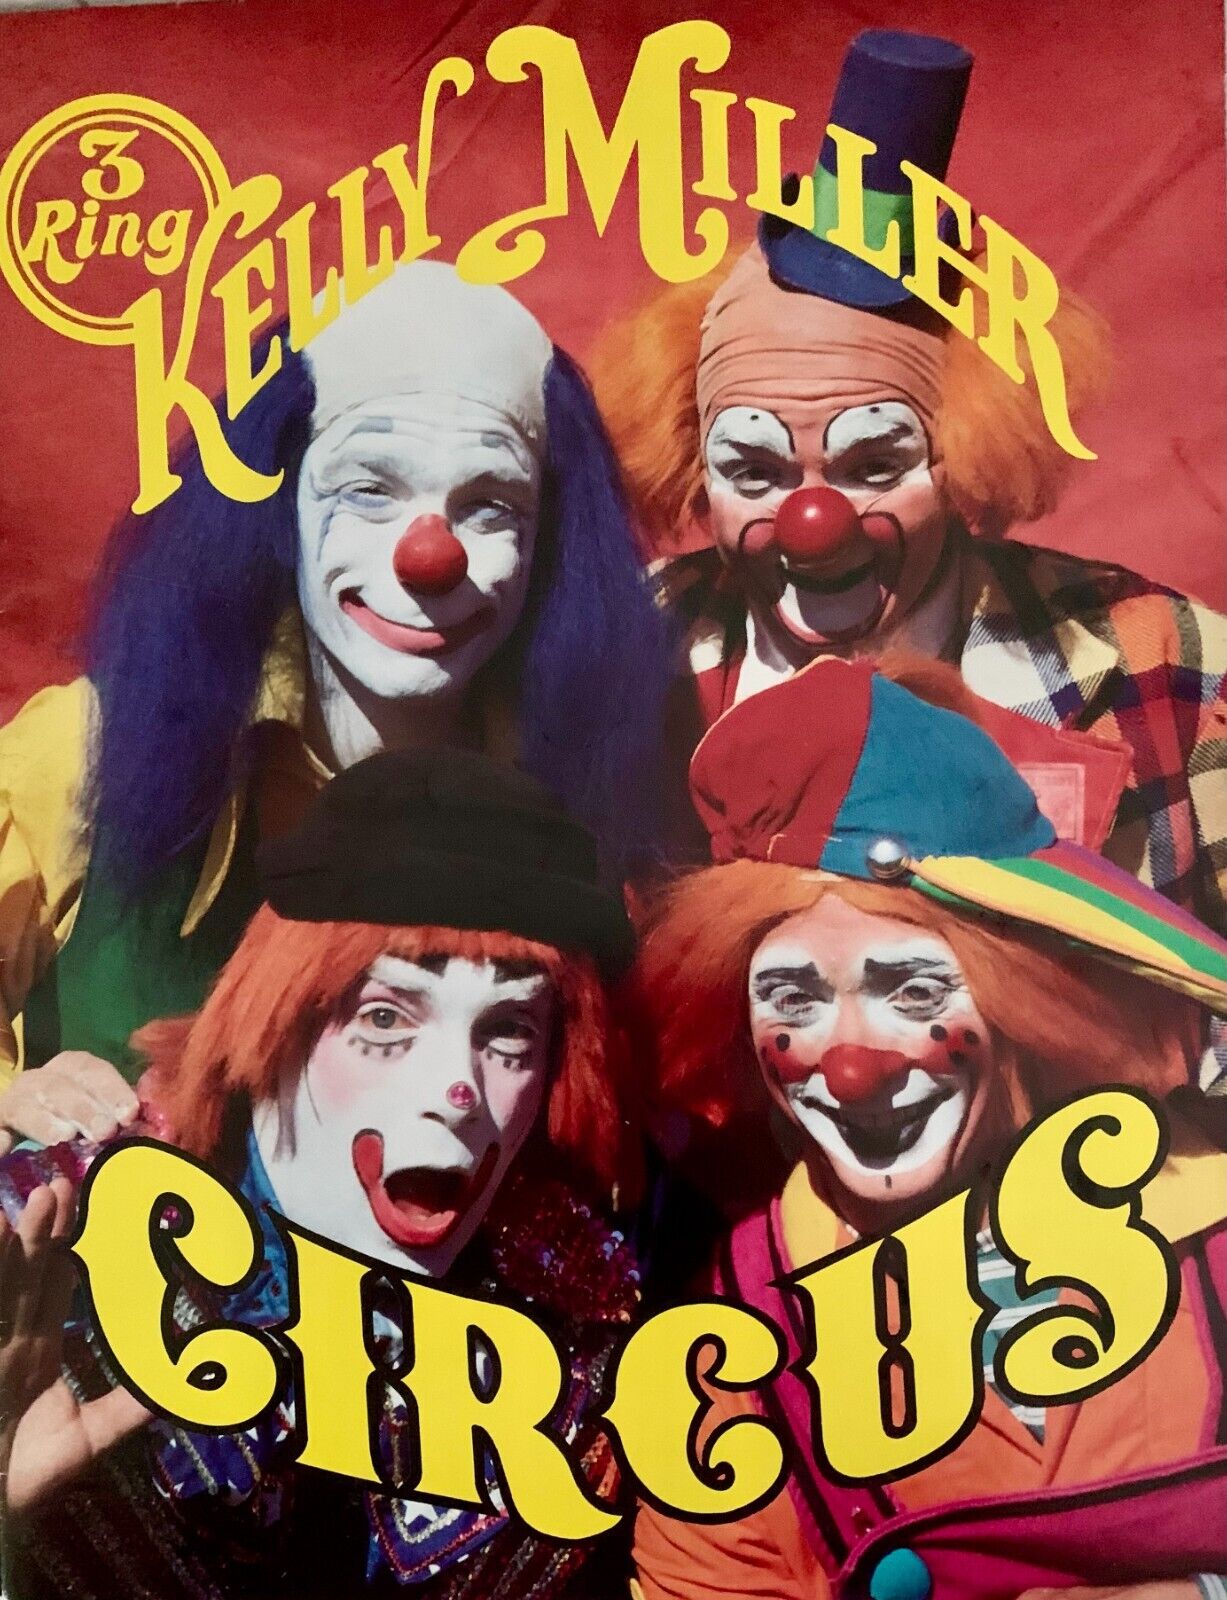 Kelly Miller 3 Ring Circus Program/Poster 1985 Clowns Ephemera